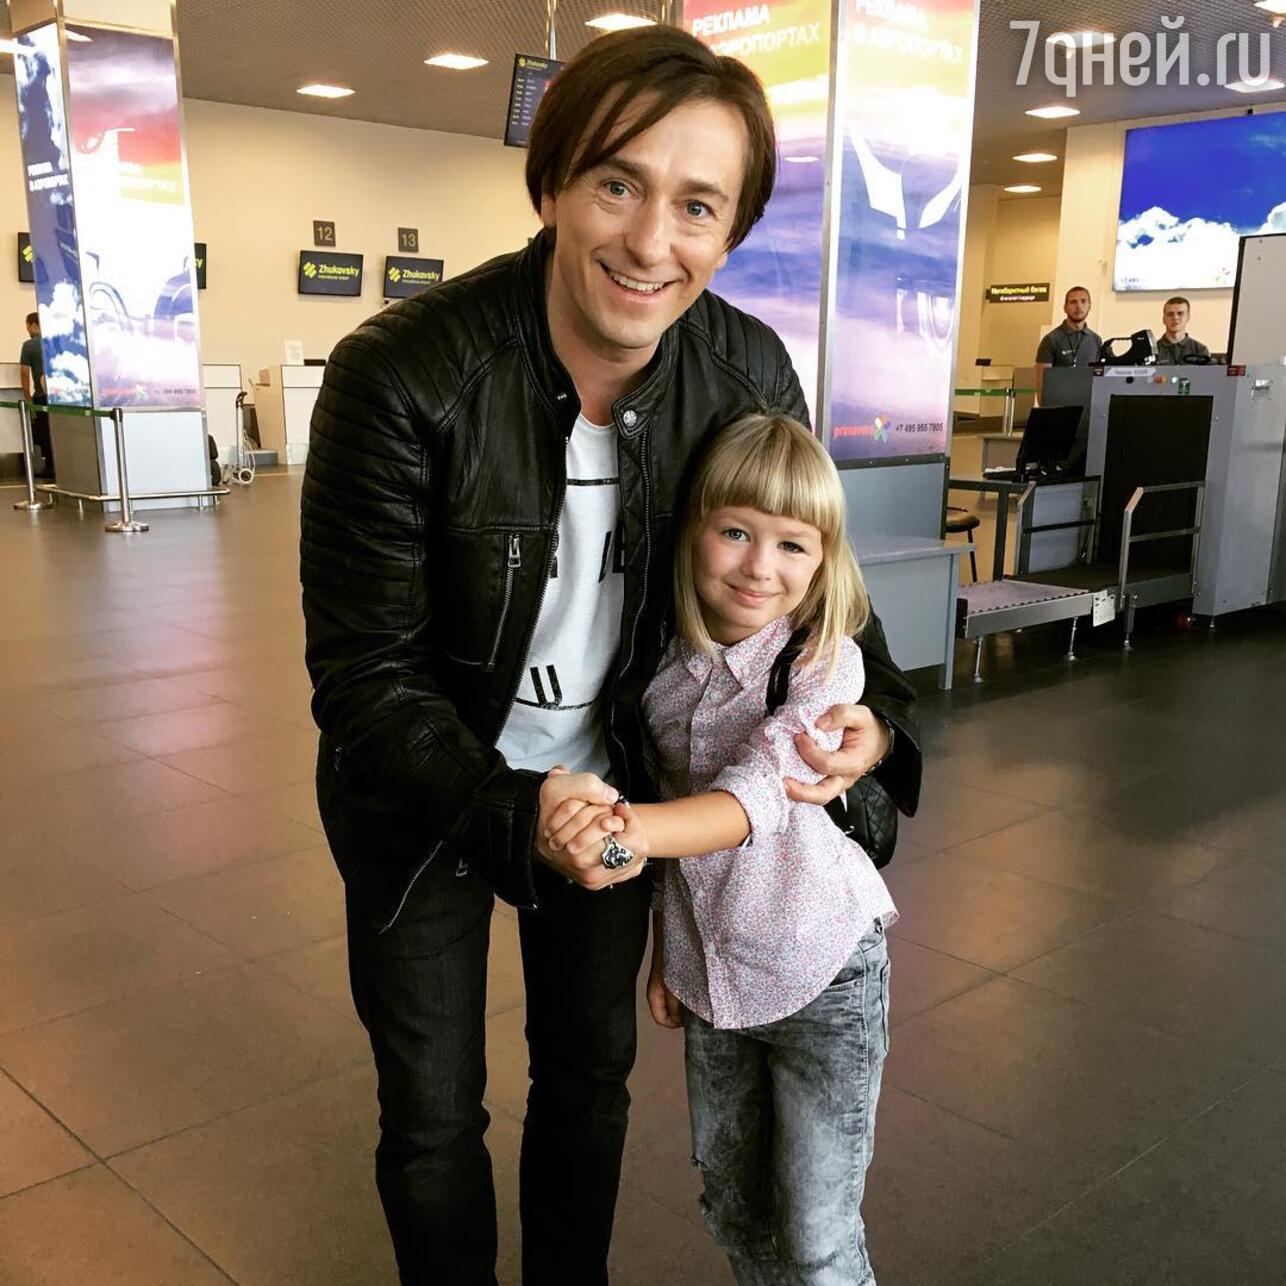 Сергей Безруков опубликовал трогательное фото старшей дочери